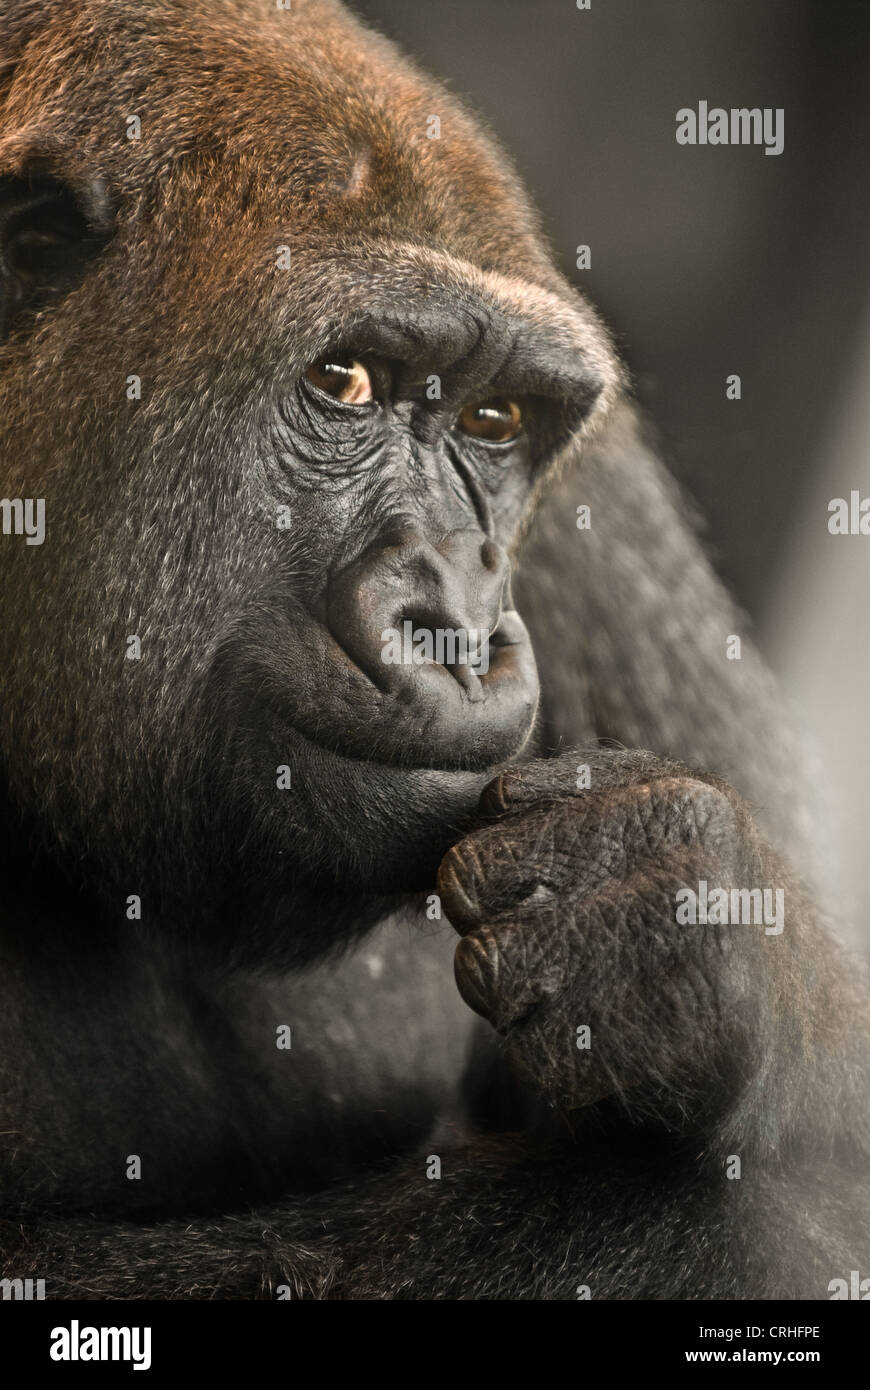 Weiblichen Gorilla beobachten die Besucher. Mit kontrollierter Beleuchtung fotografiert. Stockfoto